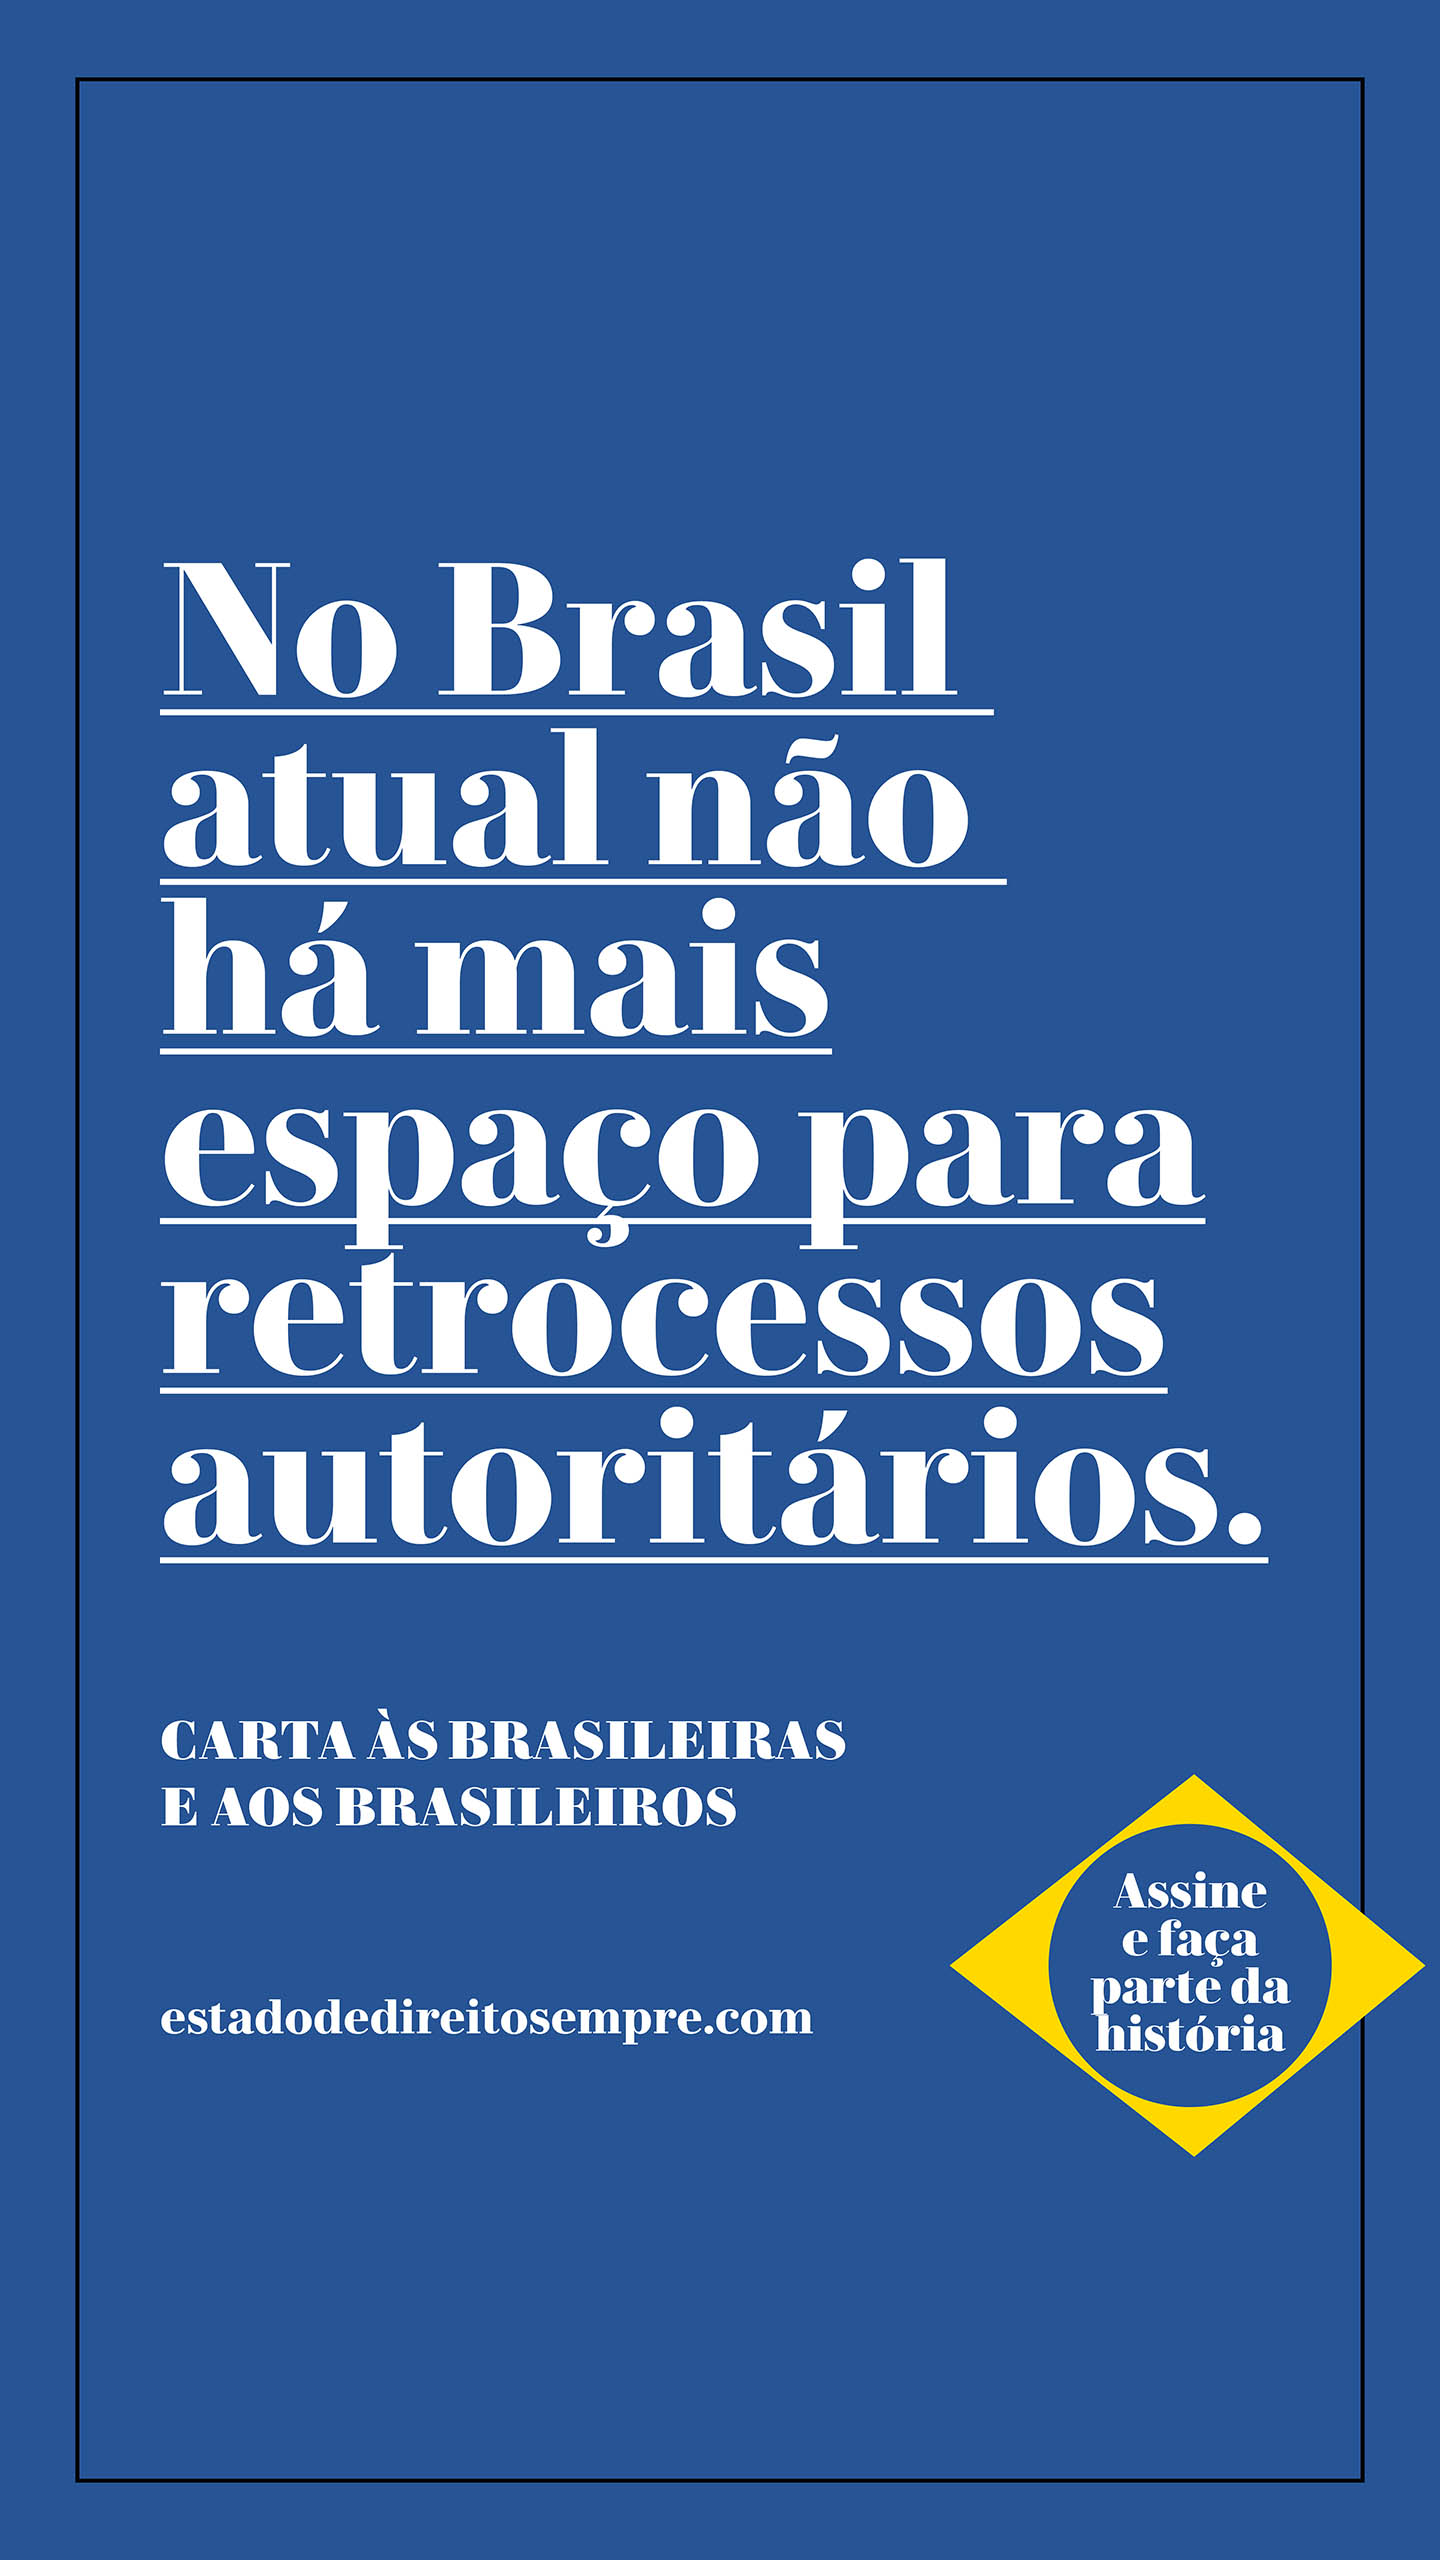 No Brasil atual não há mais espaço para retrocessos autoritários.